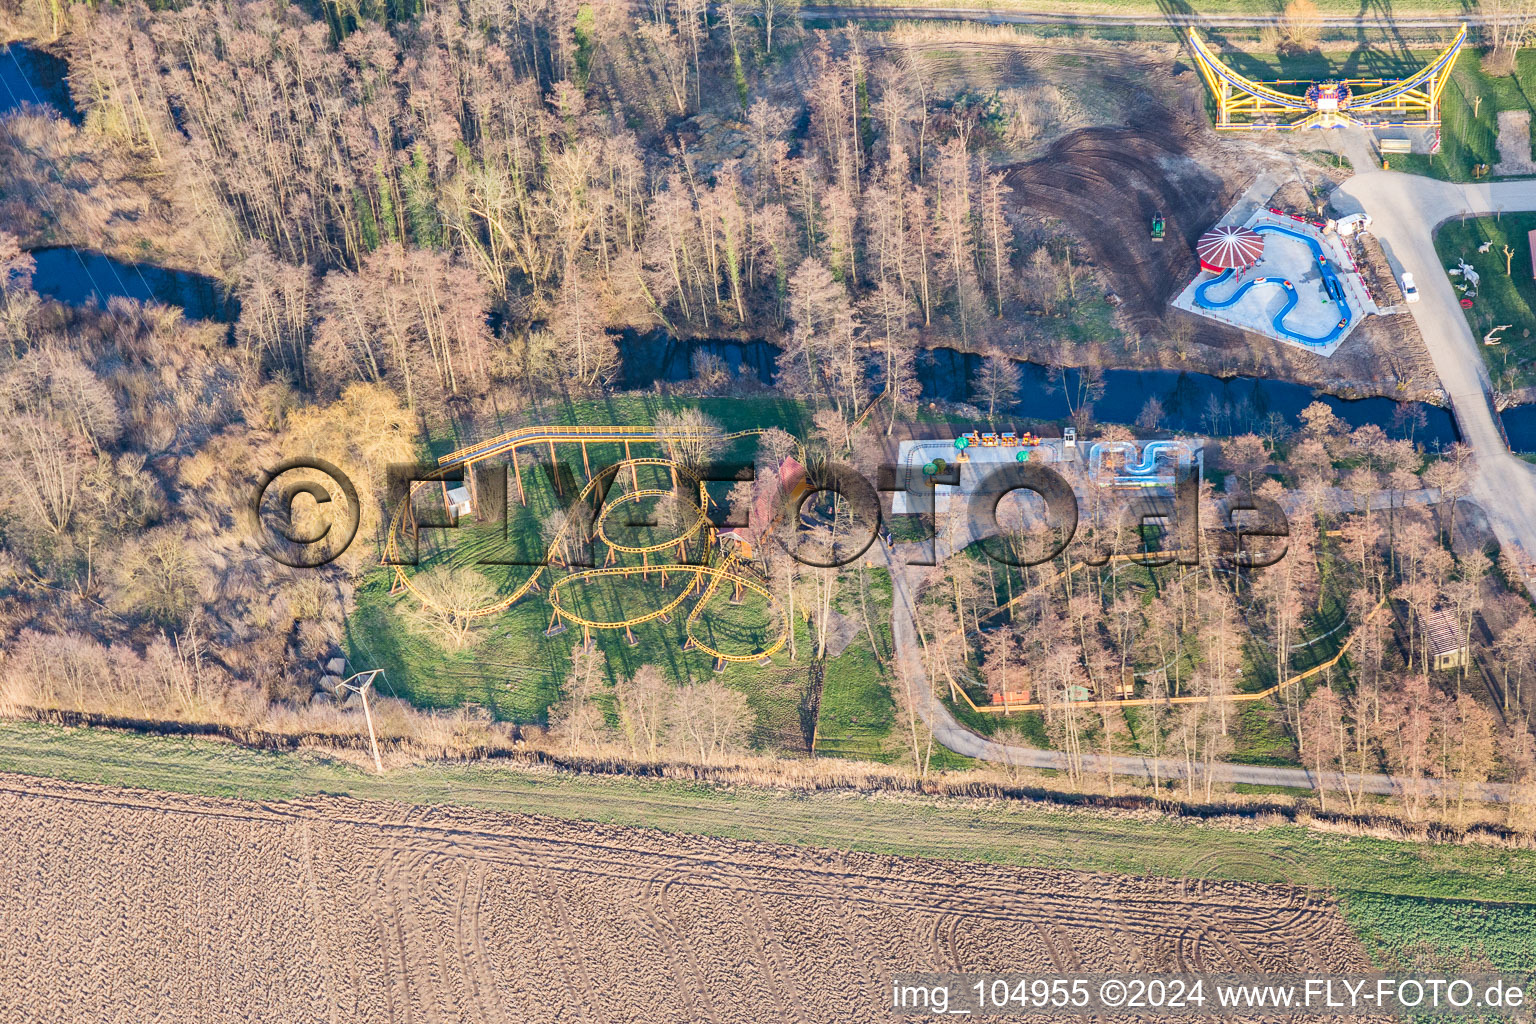 Vue aérienne de Base de loisirs - Parc d'attractions Didiland à Morsbronn-les-Bains dans le département Bas Rhin, France